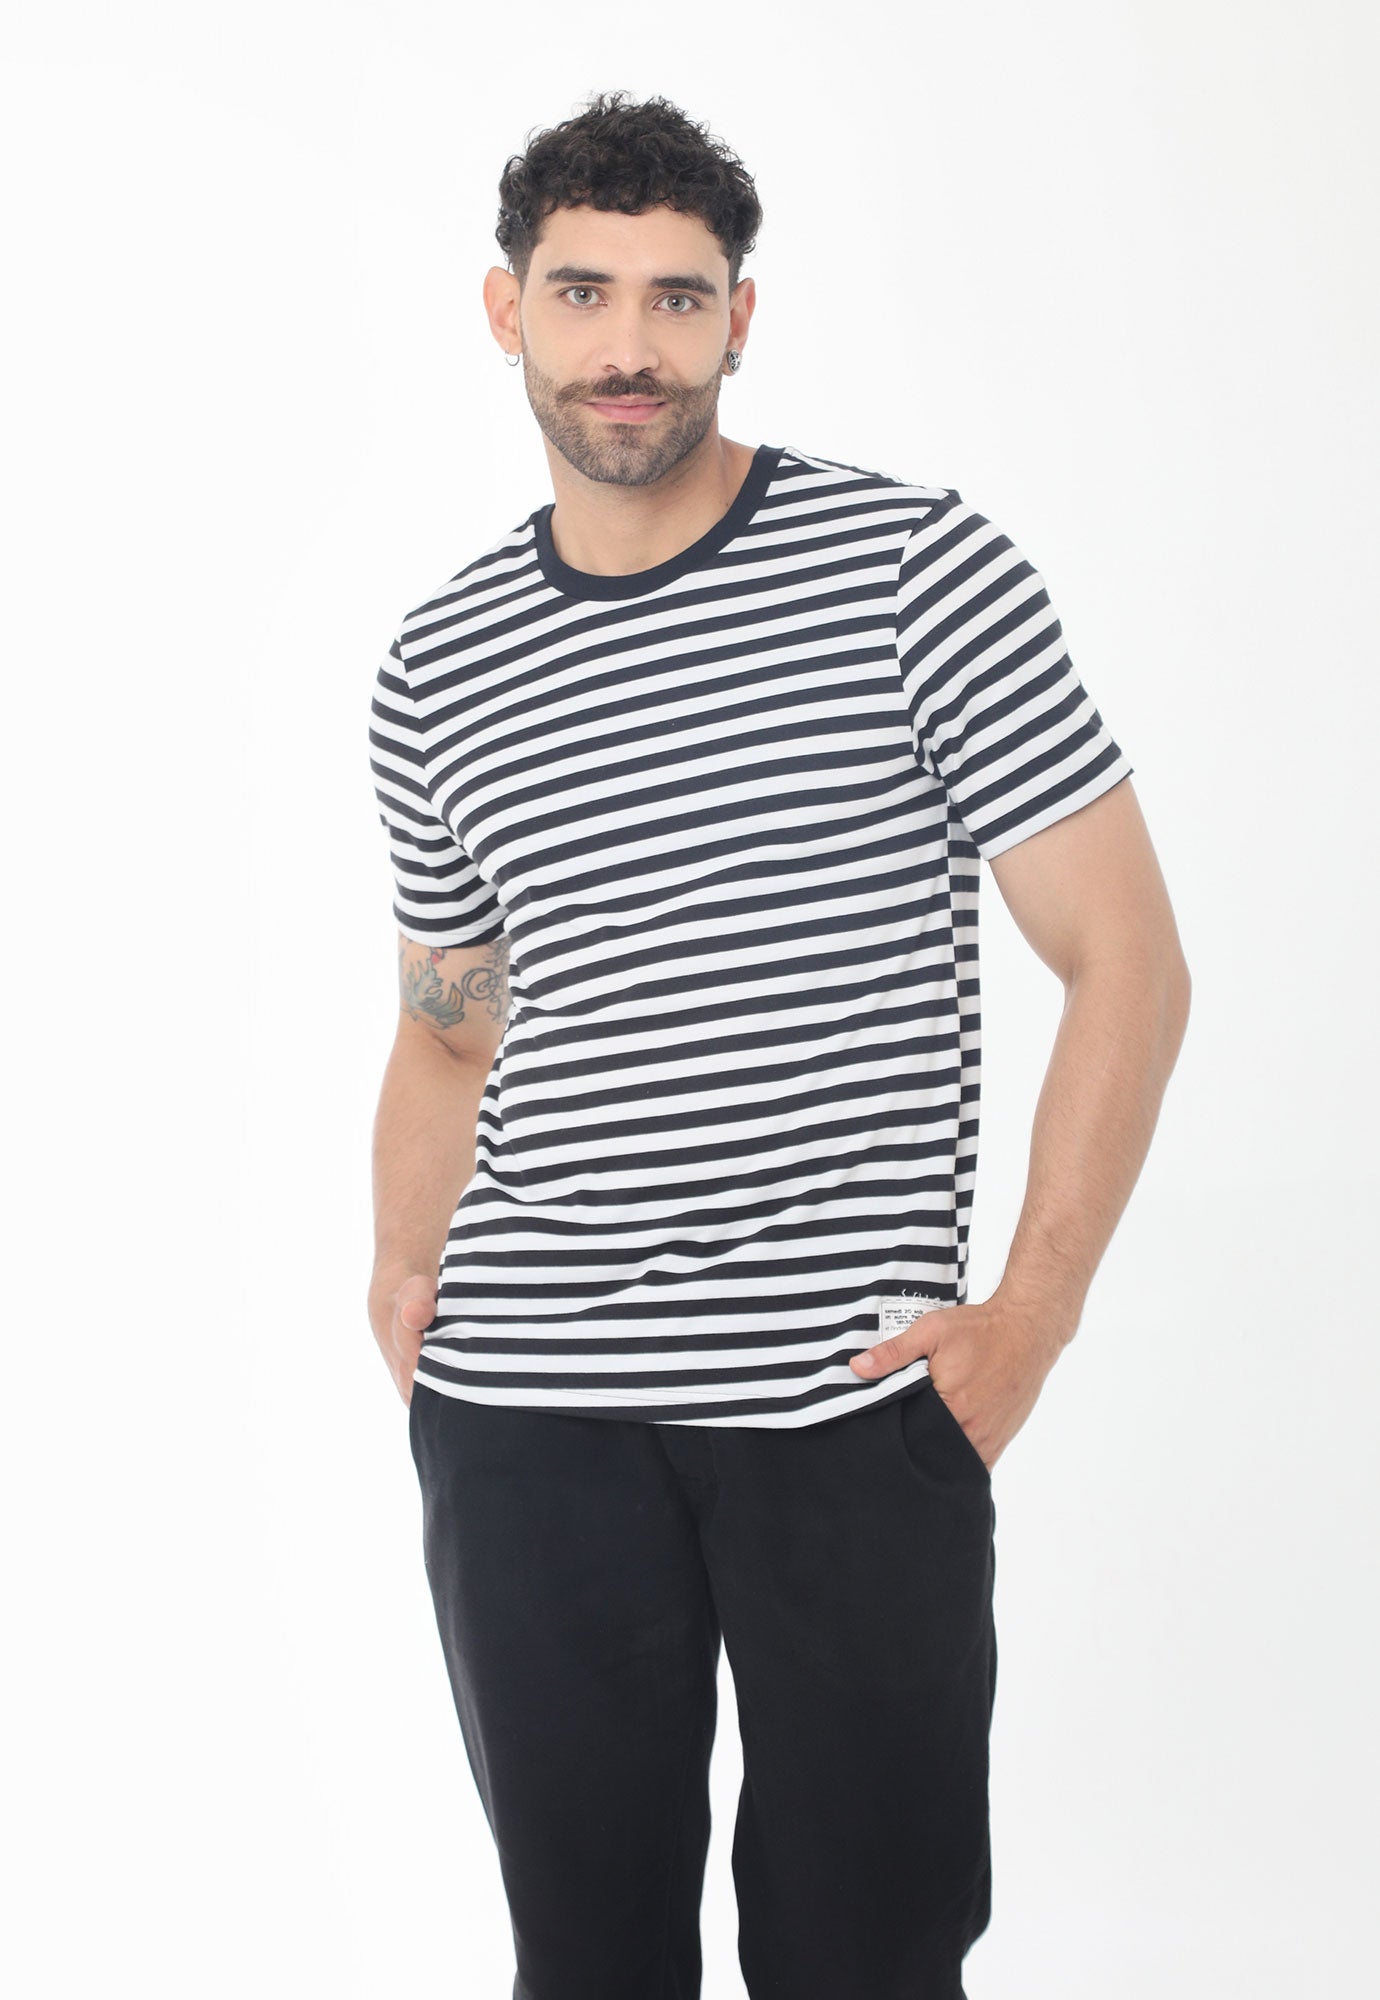 Camiseta negra manga corta, de rayas y cuello redondo para hombre